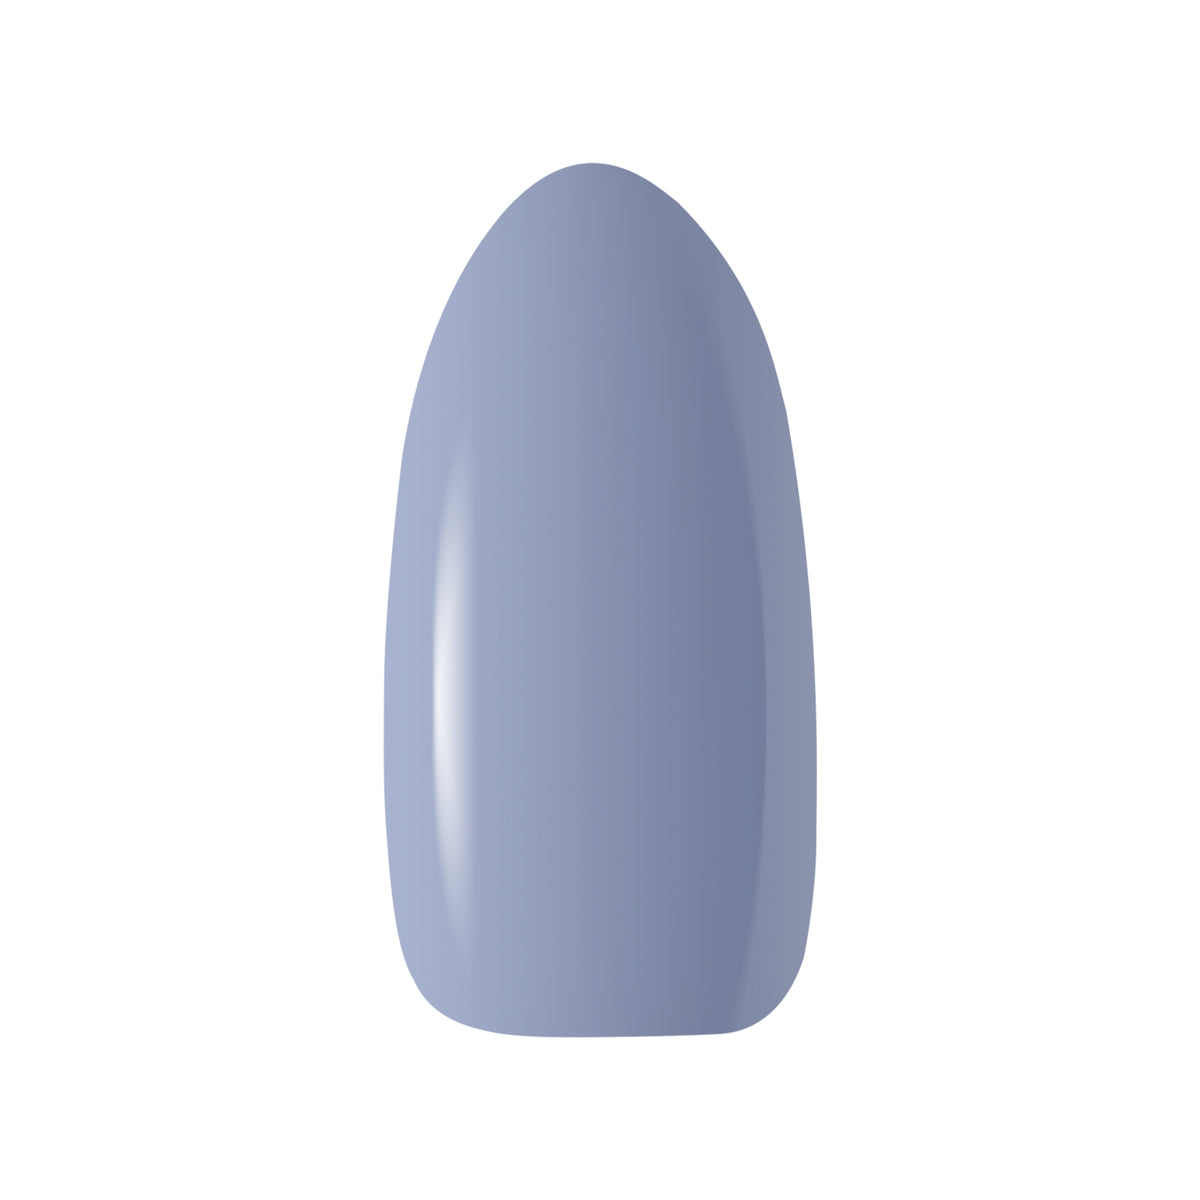 OCHO NAILS Hybrid nail polish gray 604 -5 g